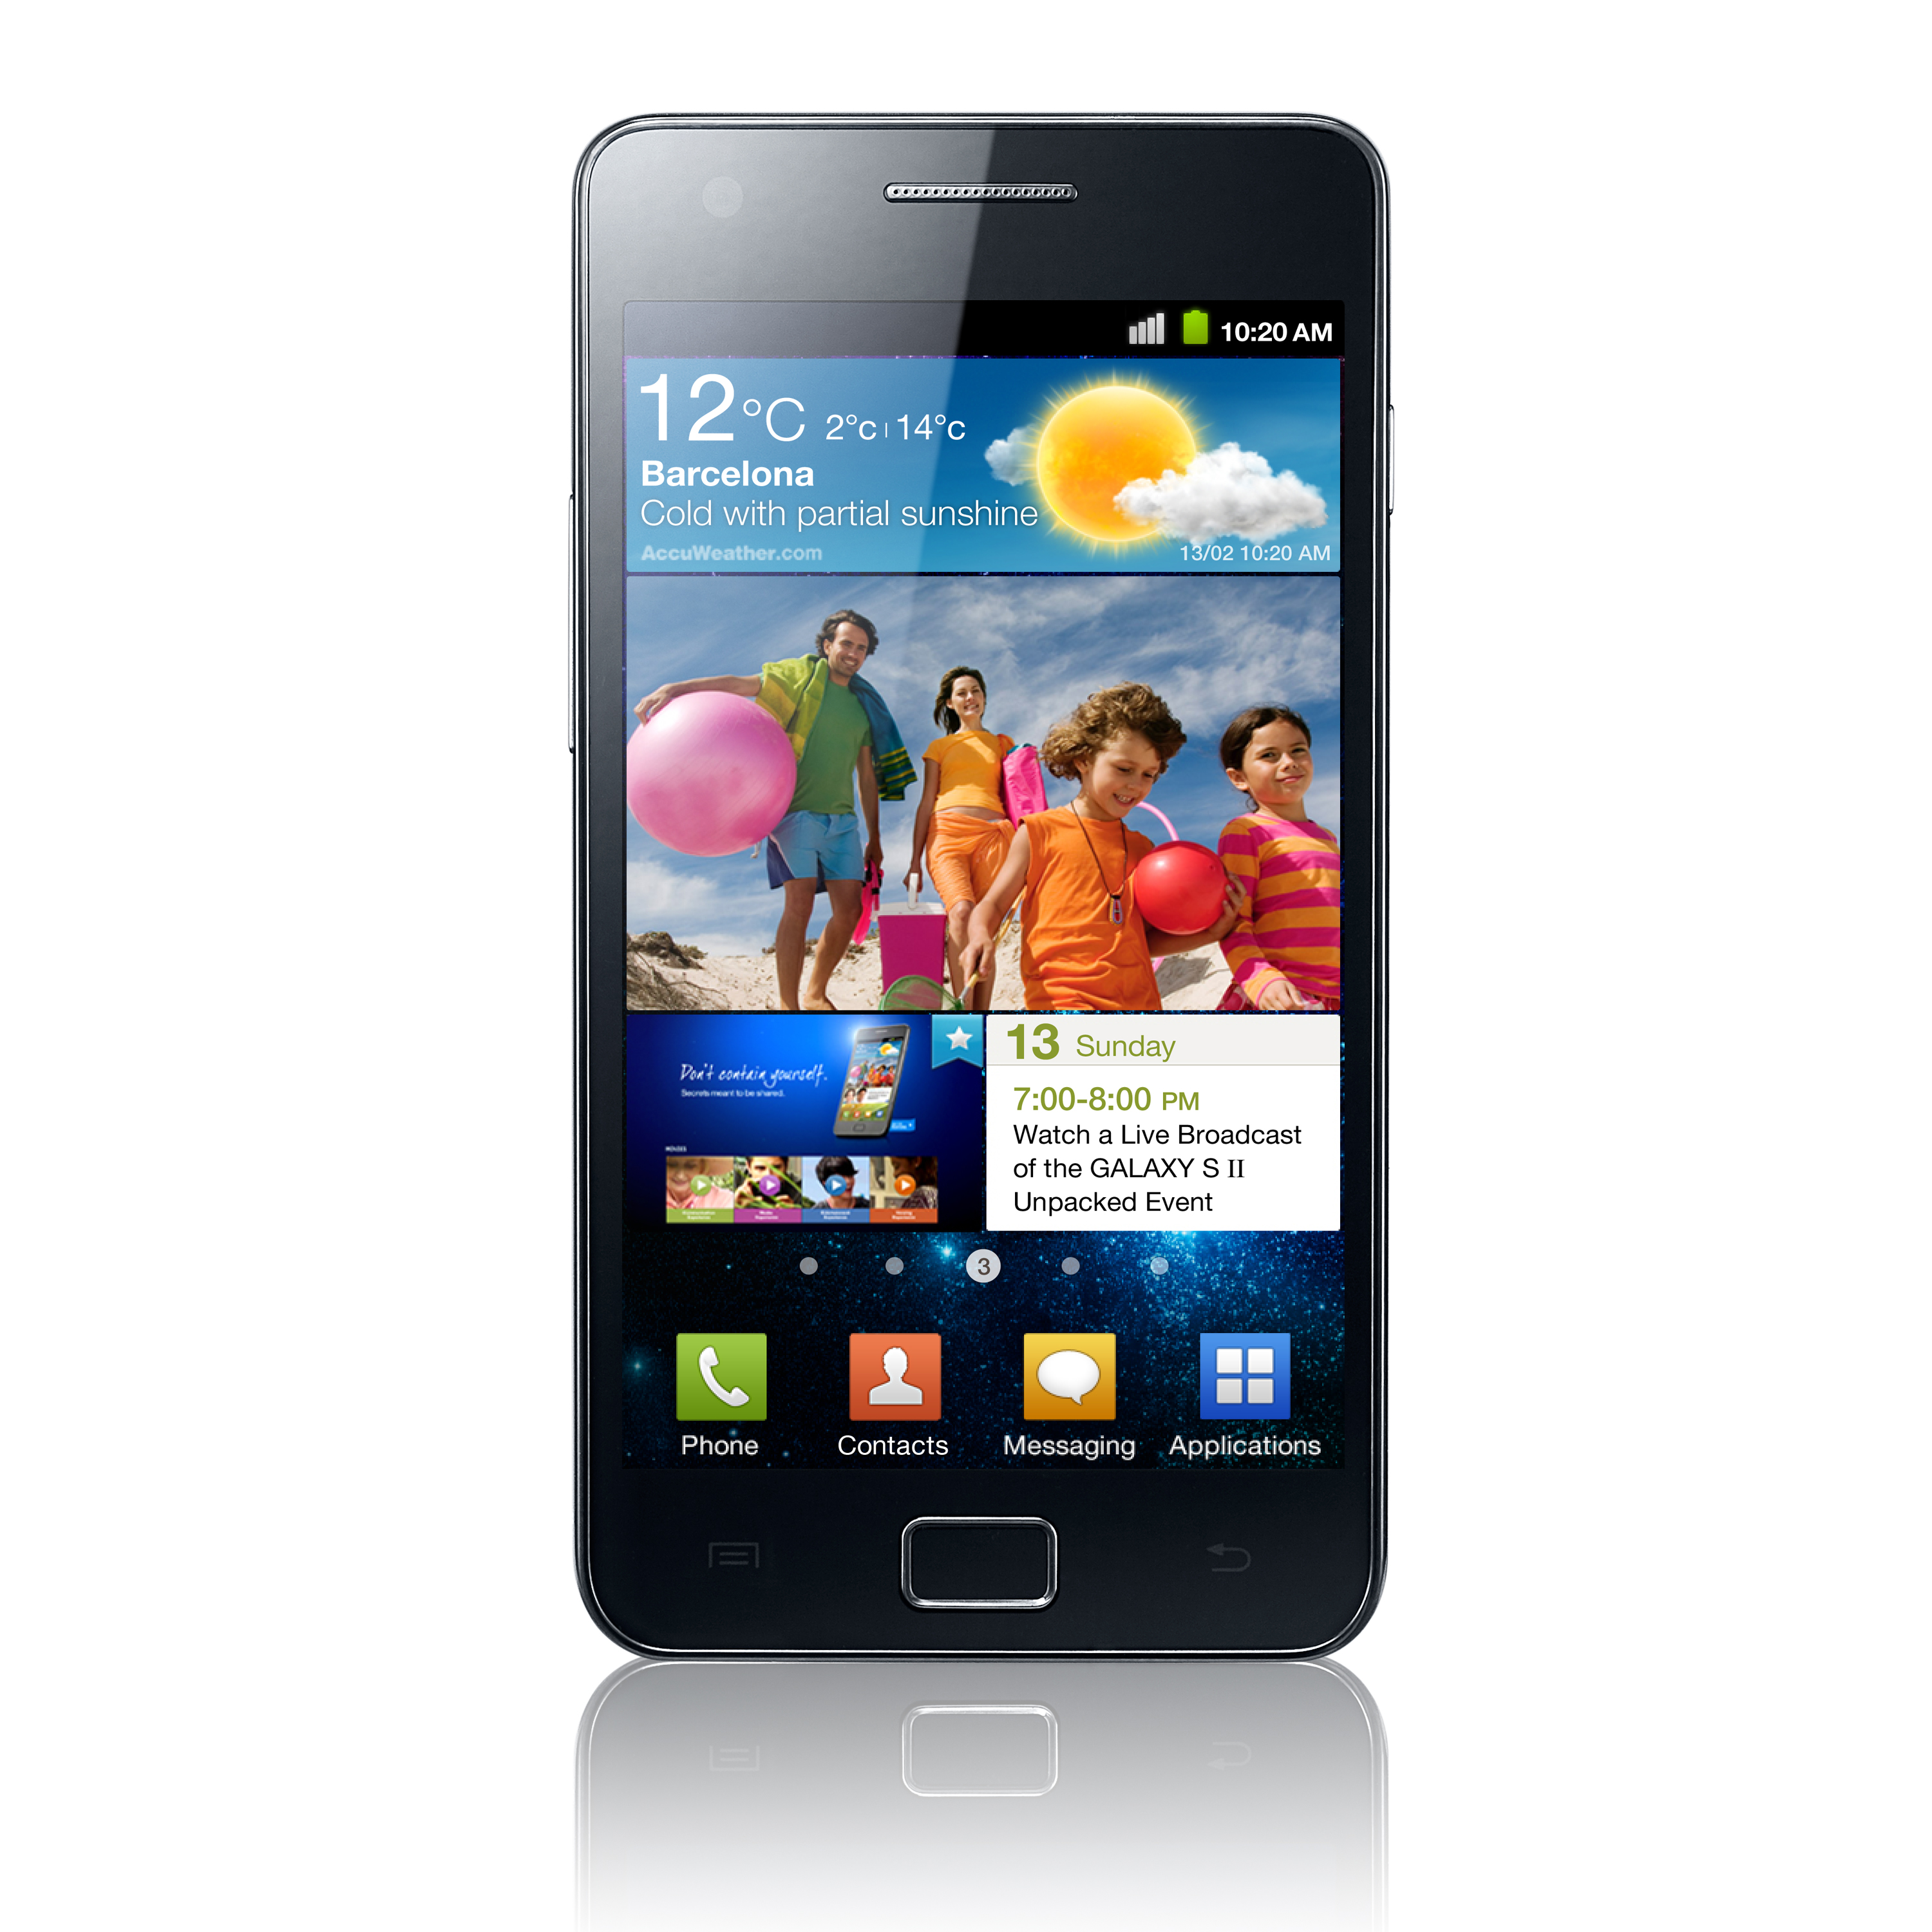 الهاتف العملاق Galaxy S II متاح للبيع في مصر عبر شركة رايه